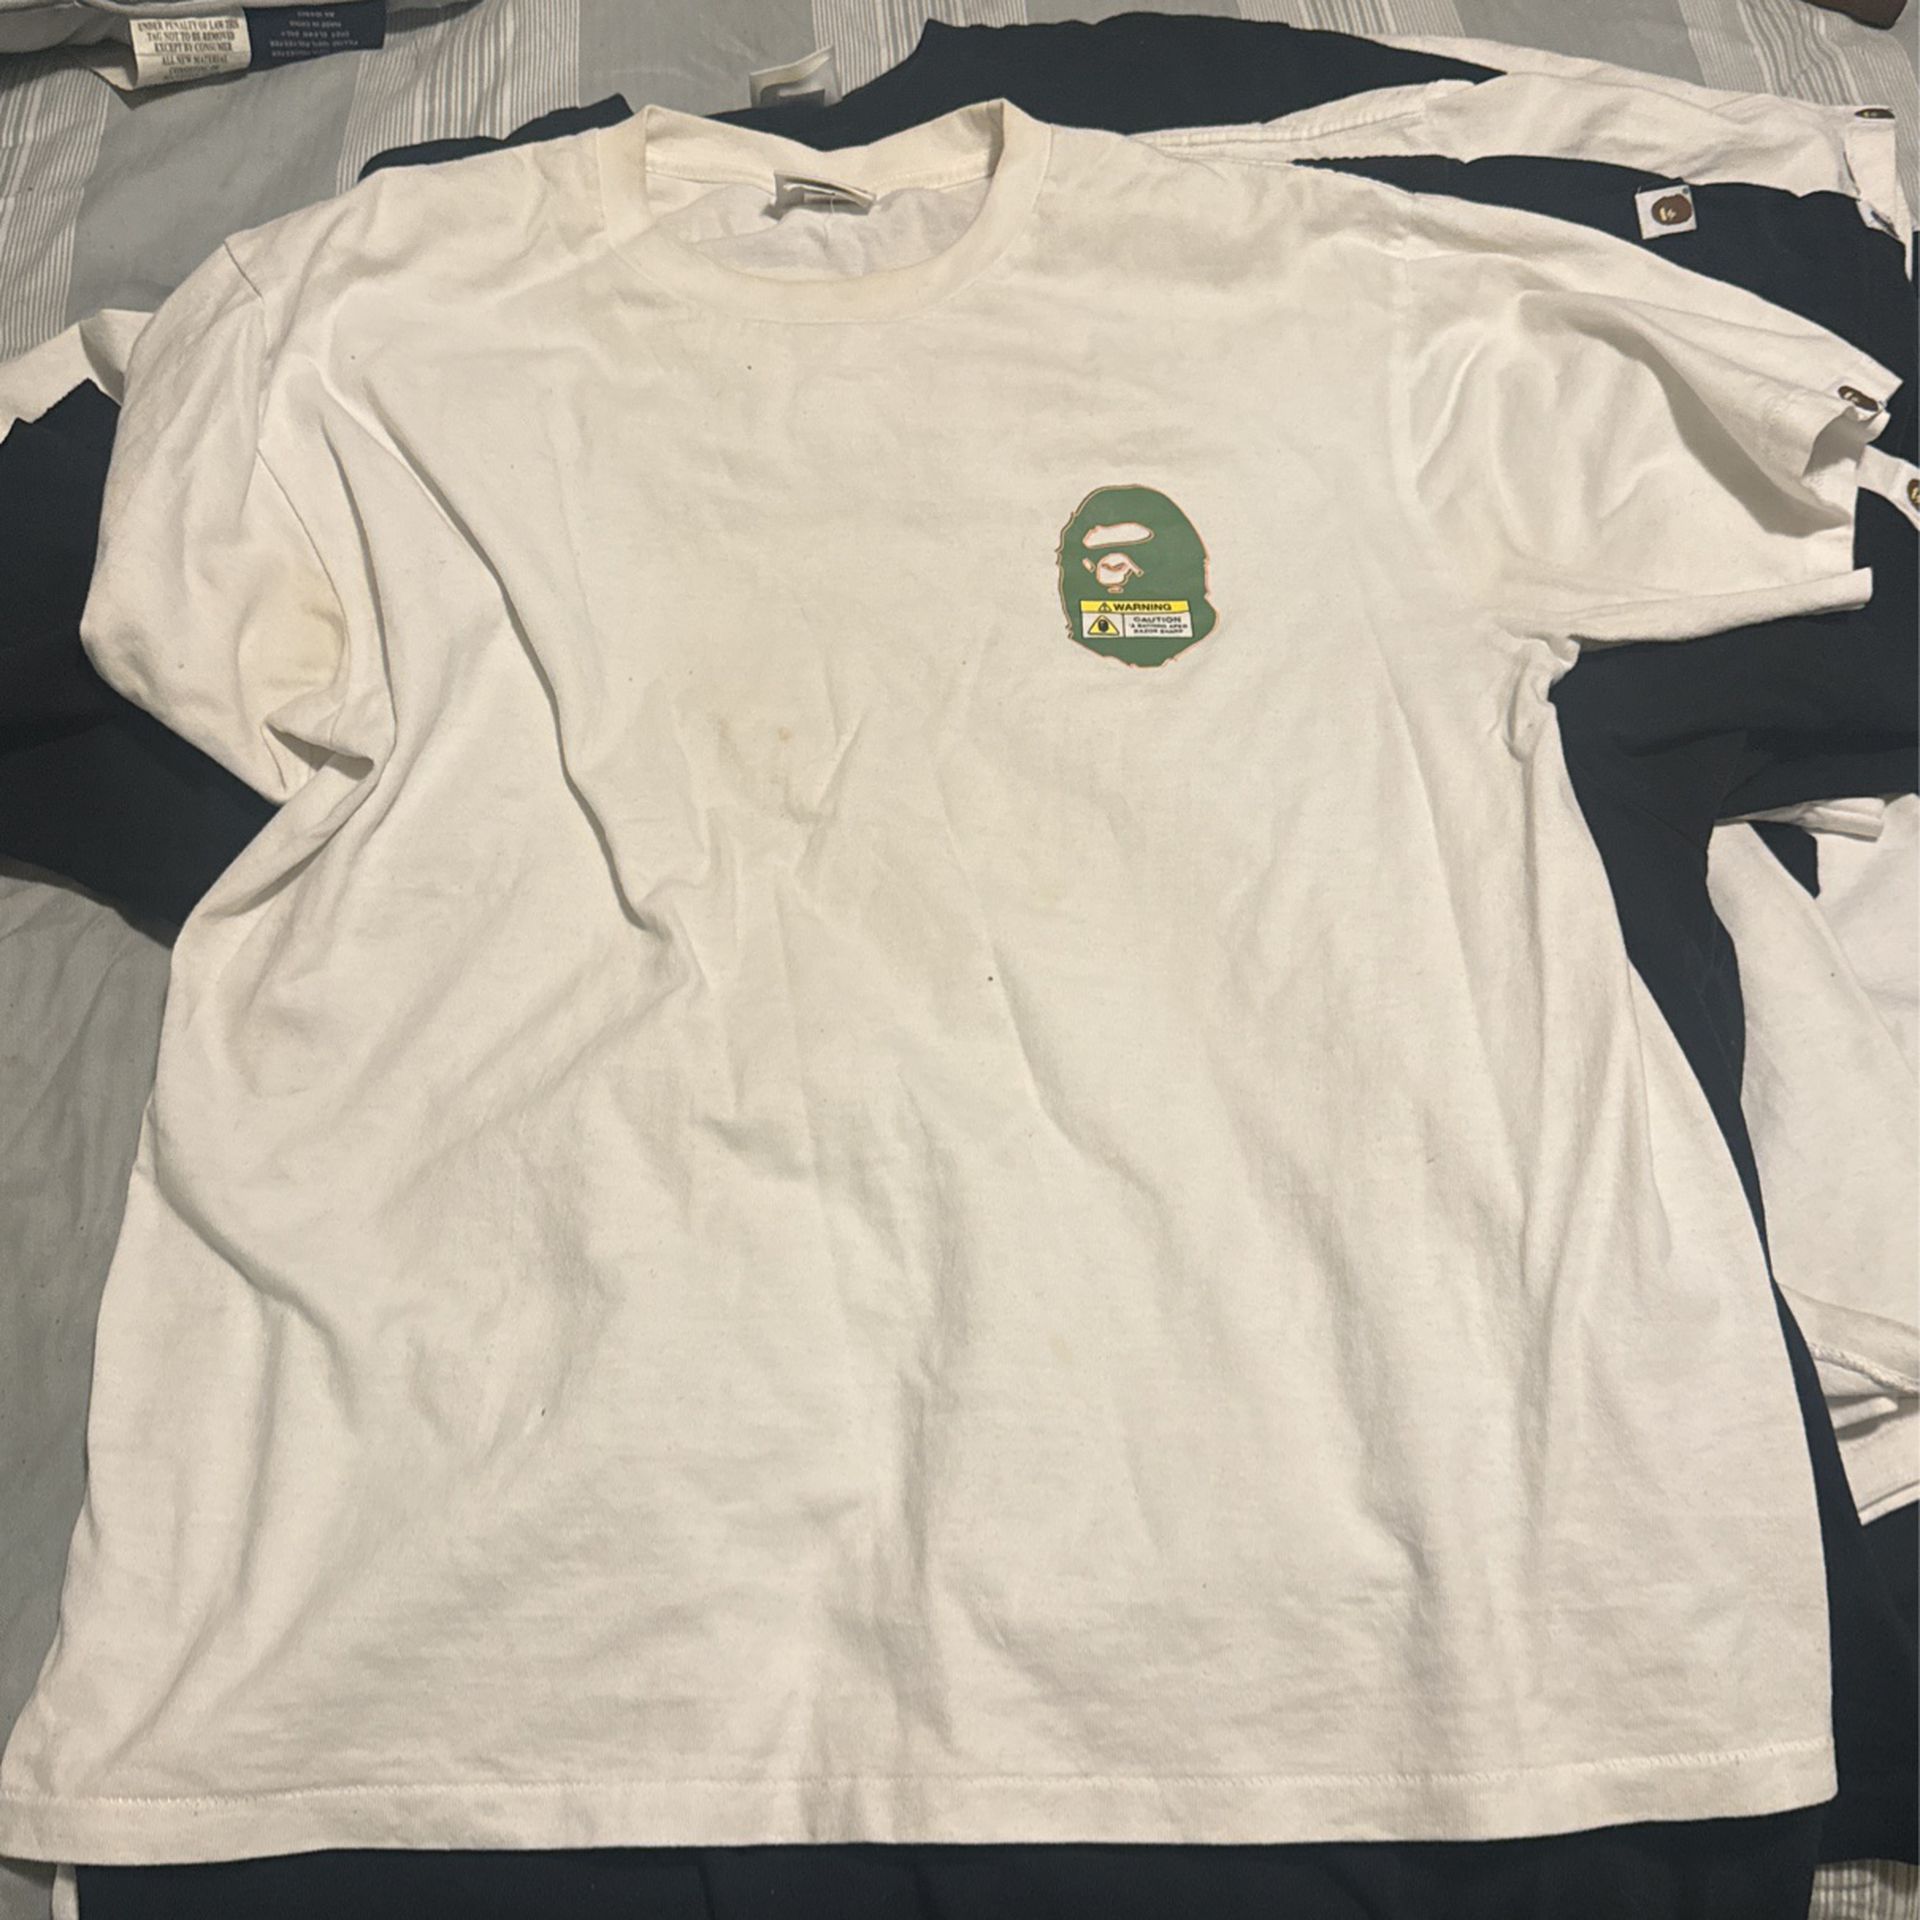 Used Bape T Shirt Size L